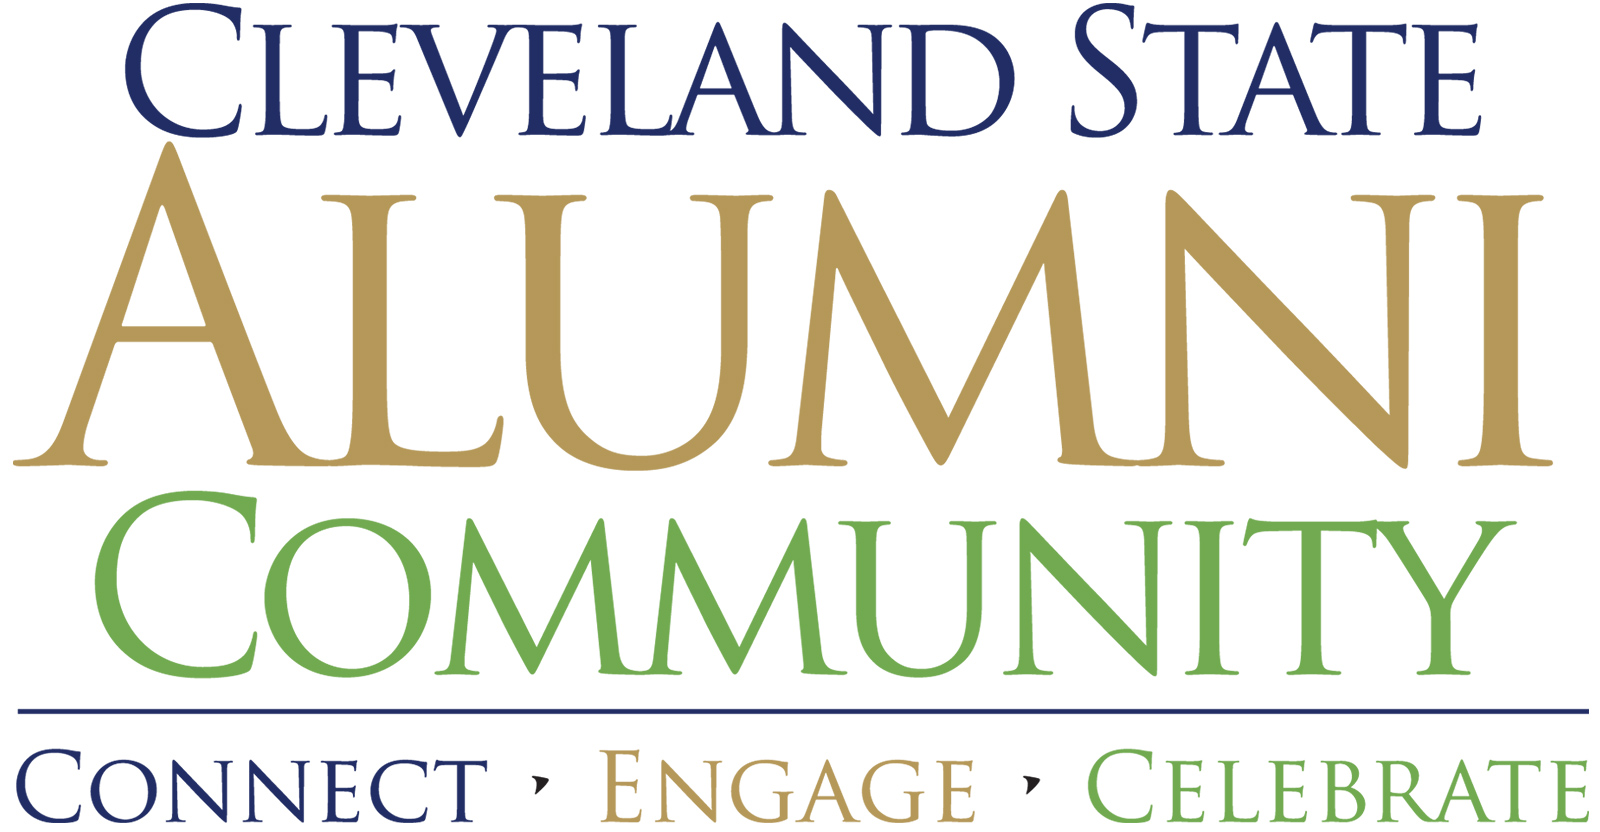 Cleveland State Alumni Community Connect, Engage, Celebrate Logo